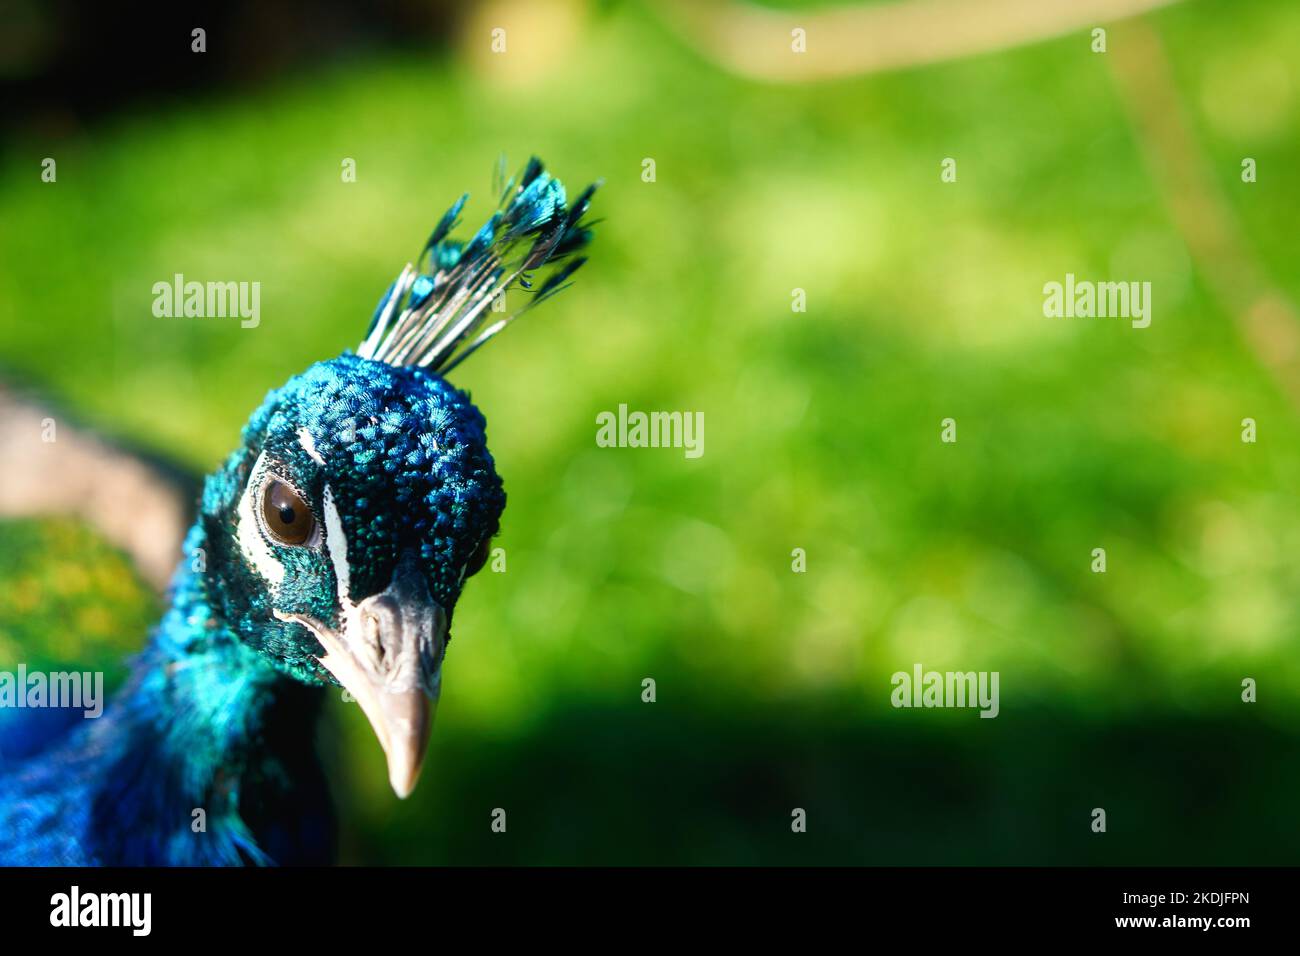 Vogel Pfau steckt seinen Kopf in das Bild. Eleganter Vogel in prächtigen Farben. Tierfoto Stockfoto